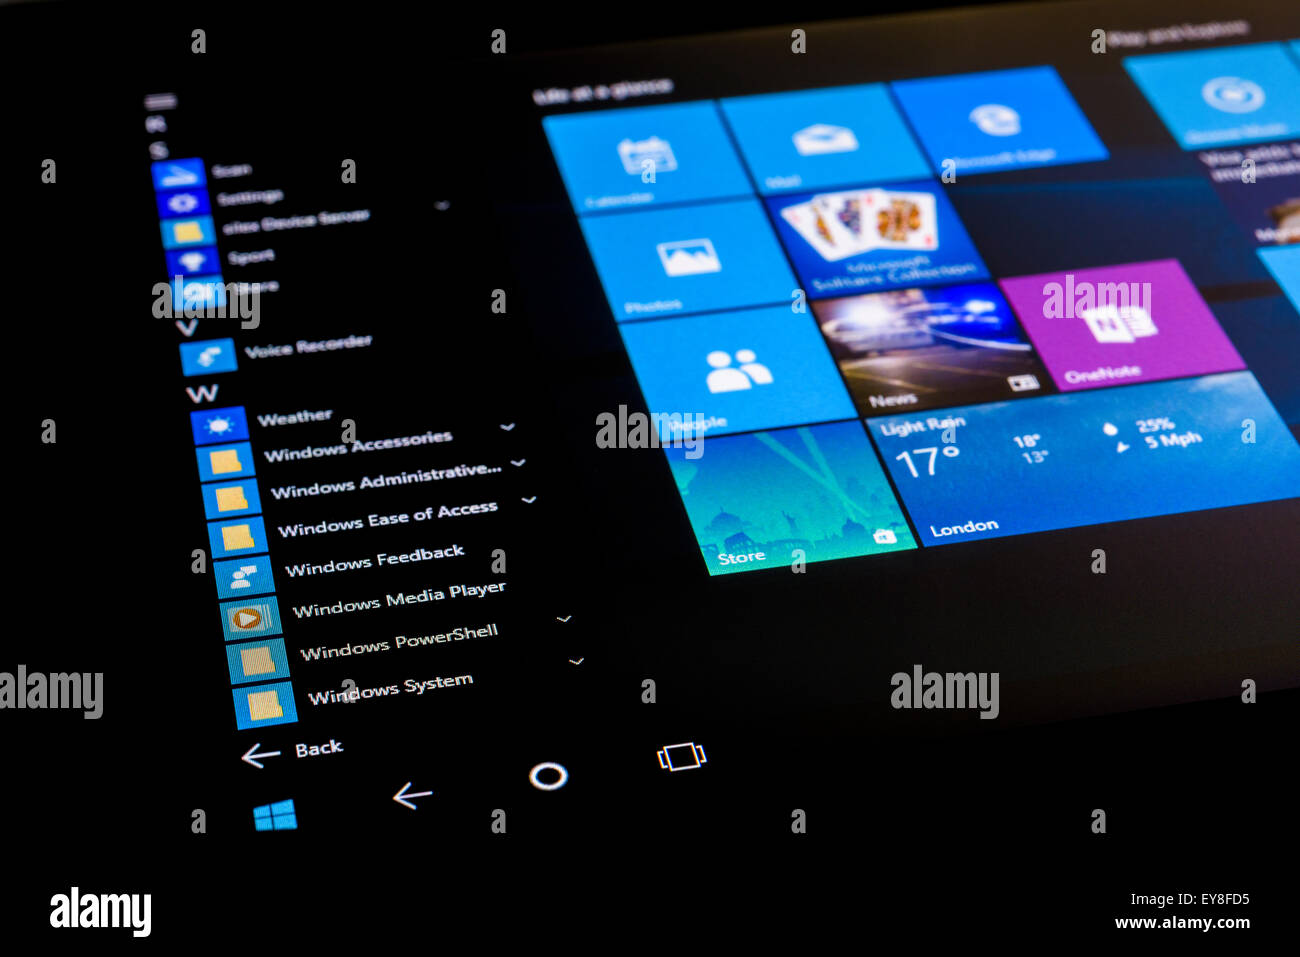 Das Startmenü von Microsoft Windows 10 Betriebssystem auf einem Touch-Screen-Tablette im Tablet-Modus. Stockfoto